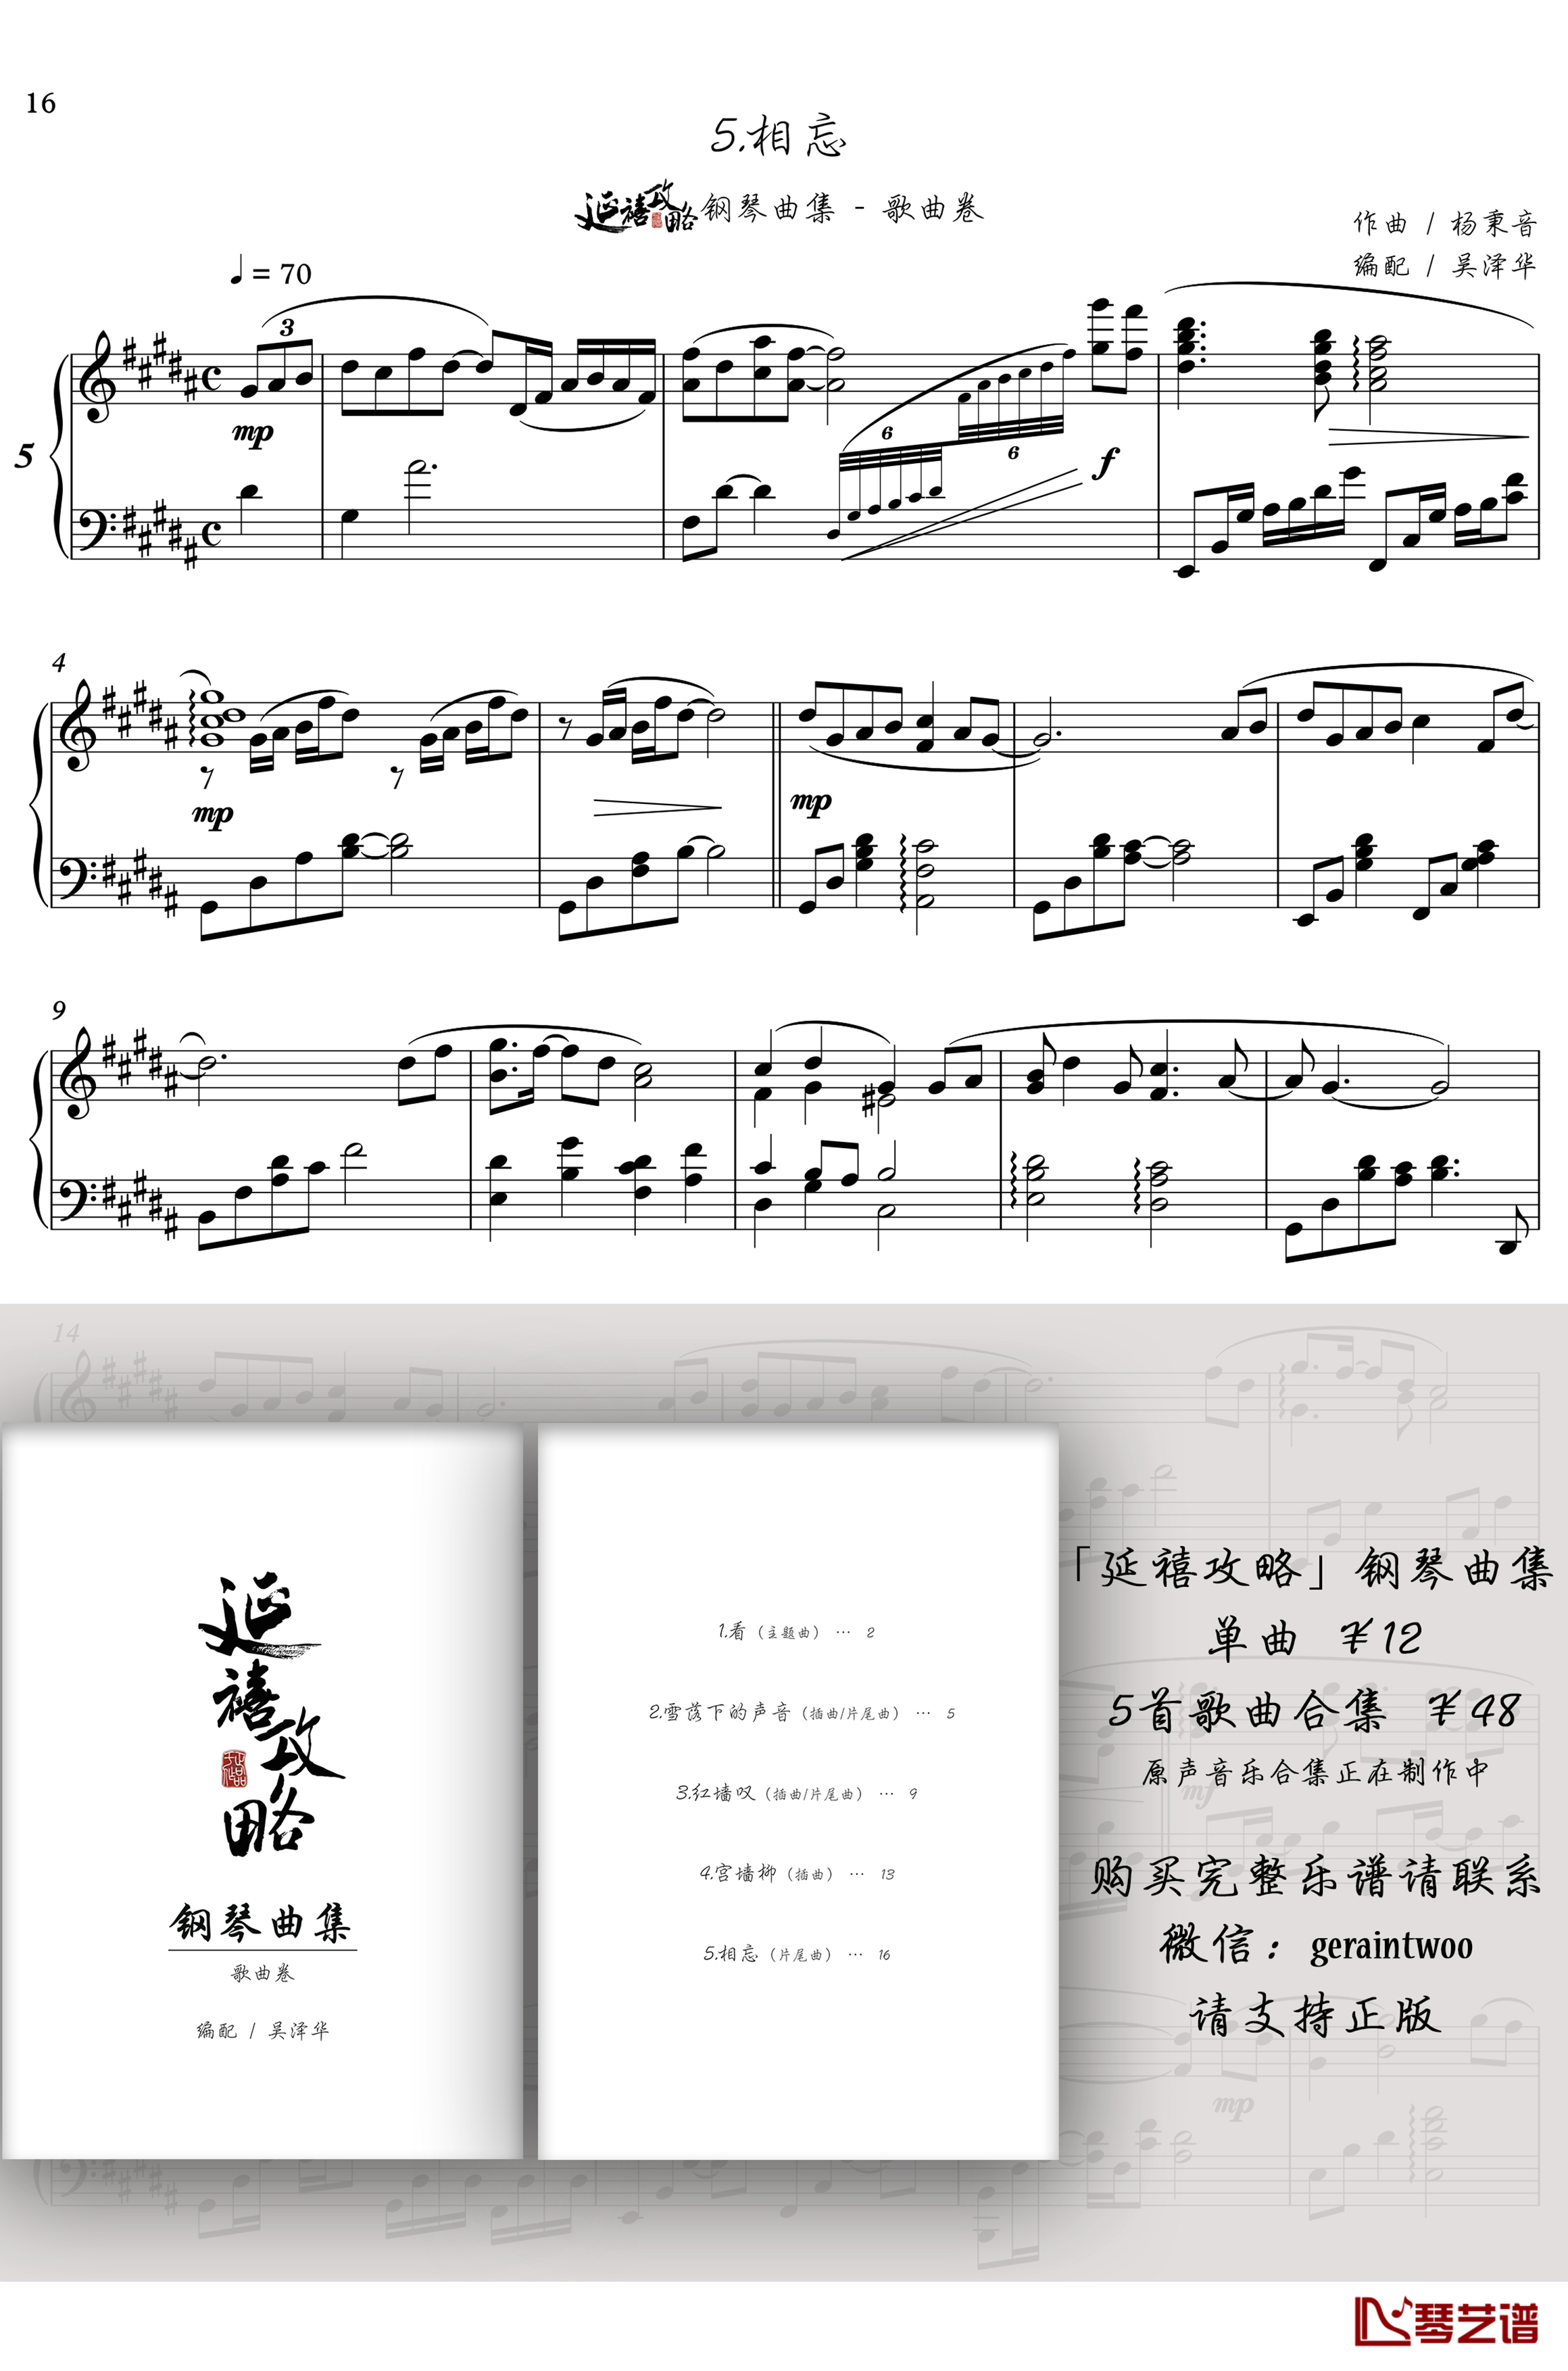 相忘钢琴谱-「延禧攻略」片尾曲-苏青1